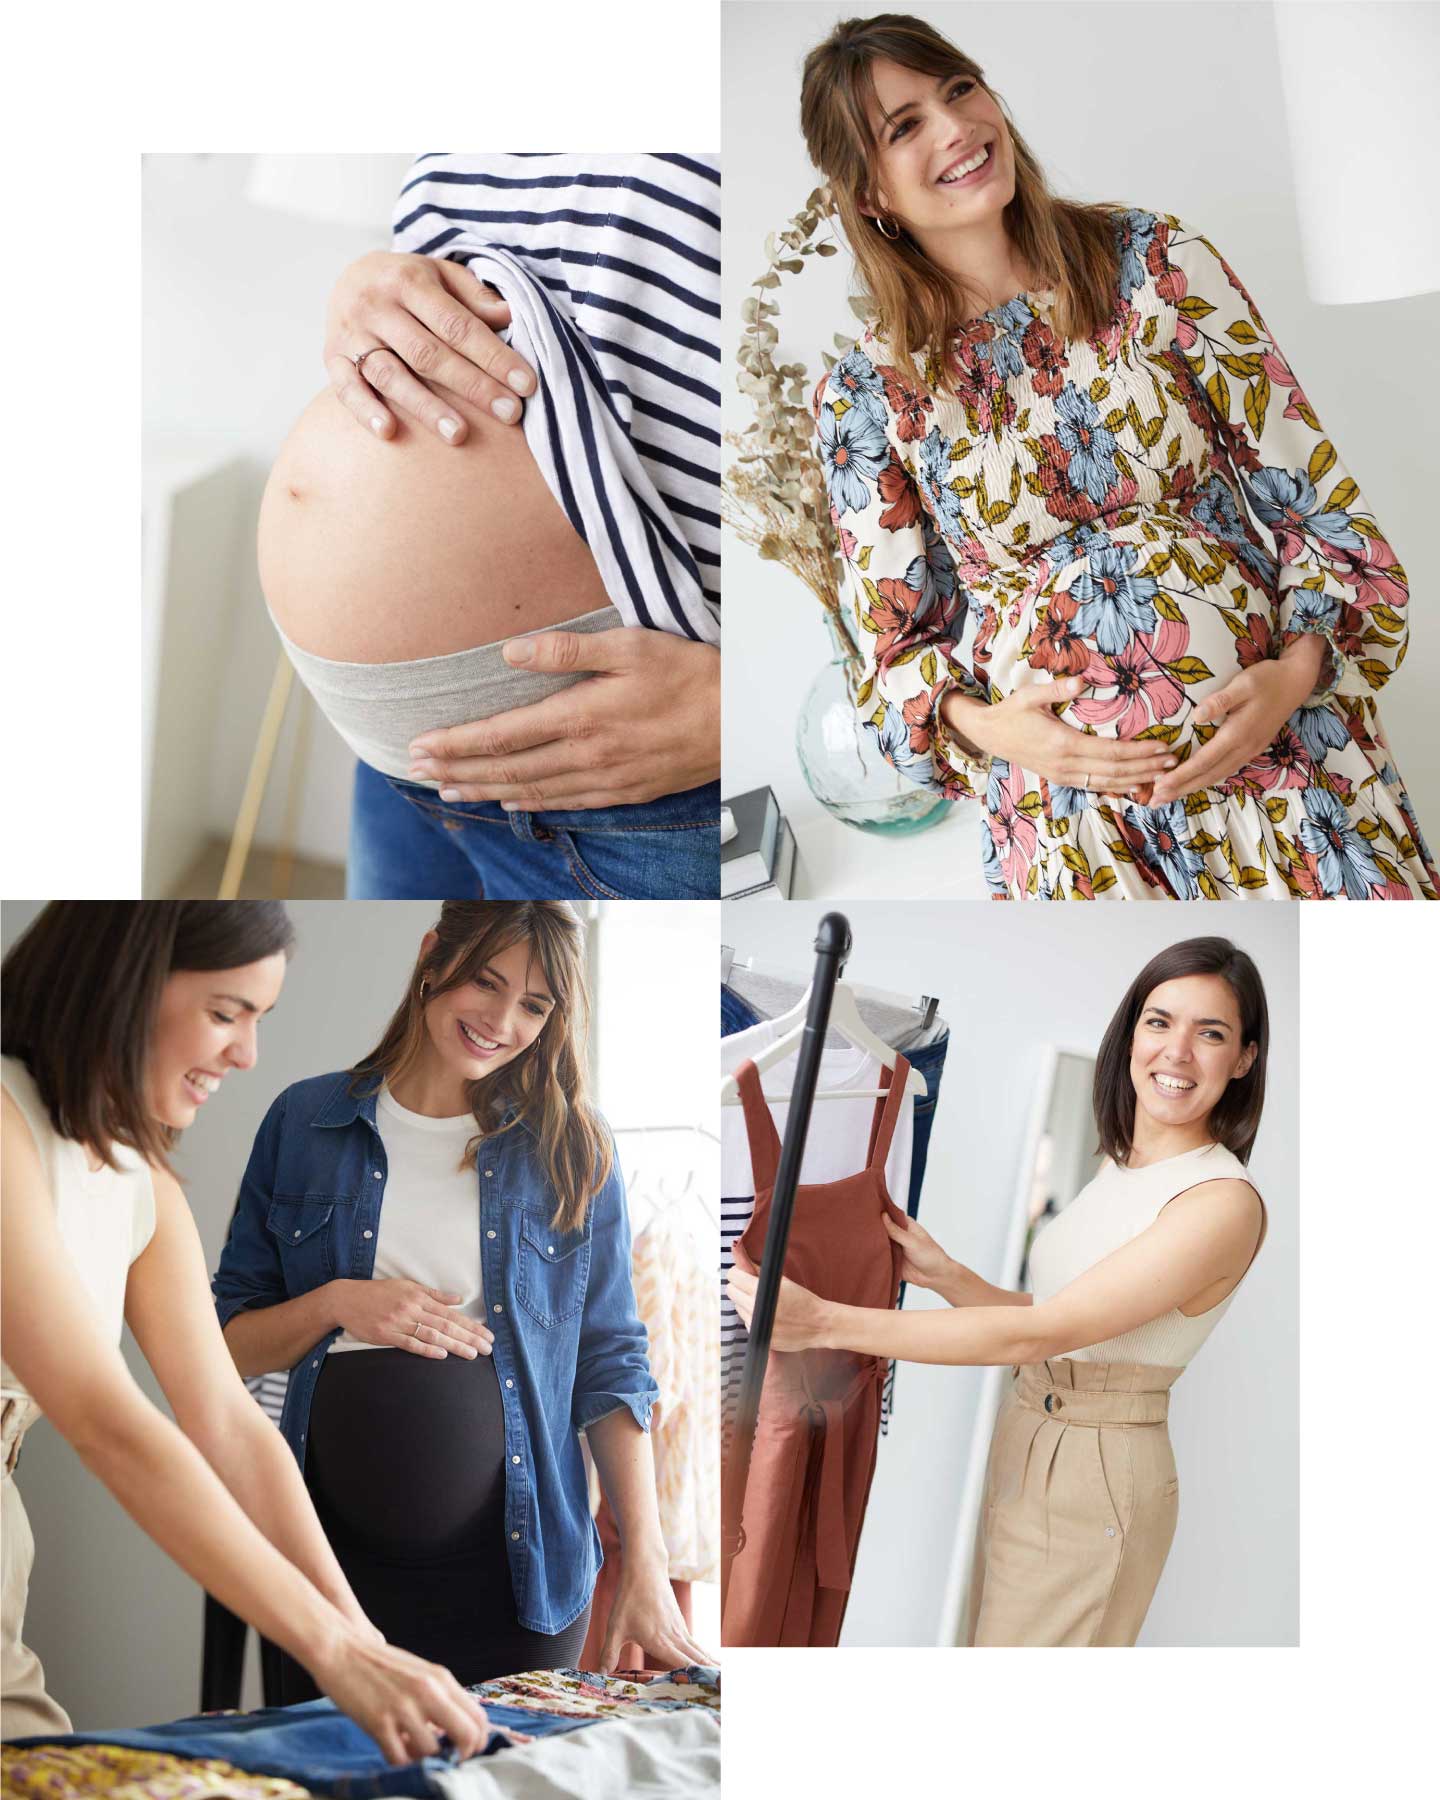 Femme enceinte : comment s'habiller avec style - Elora